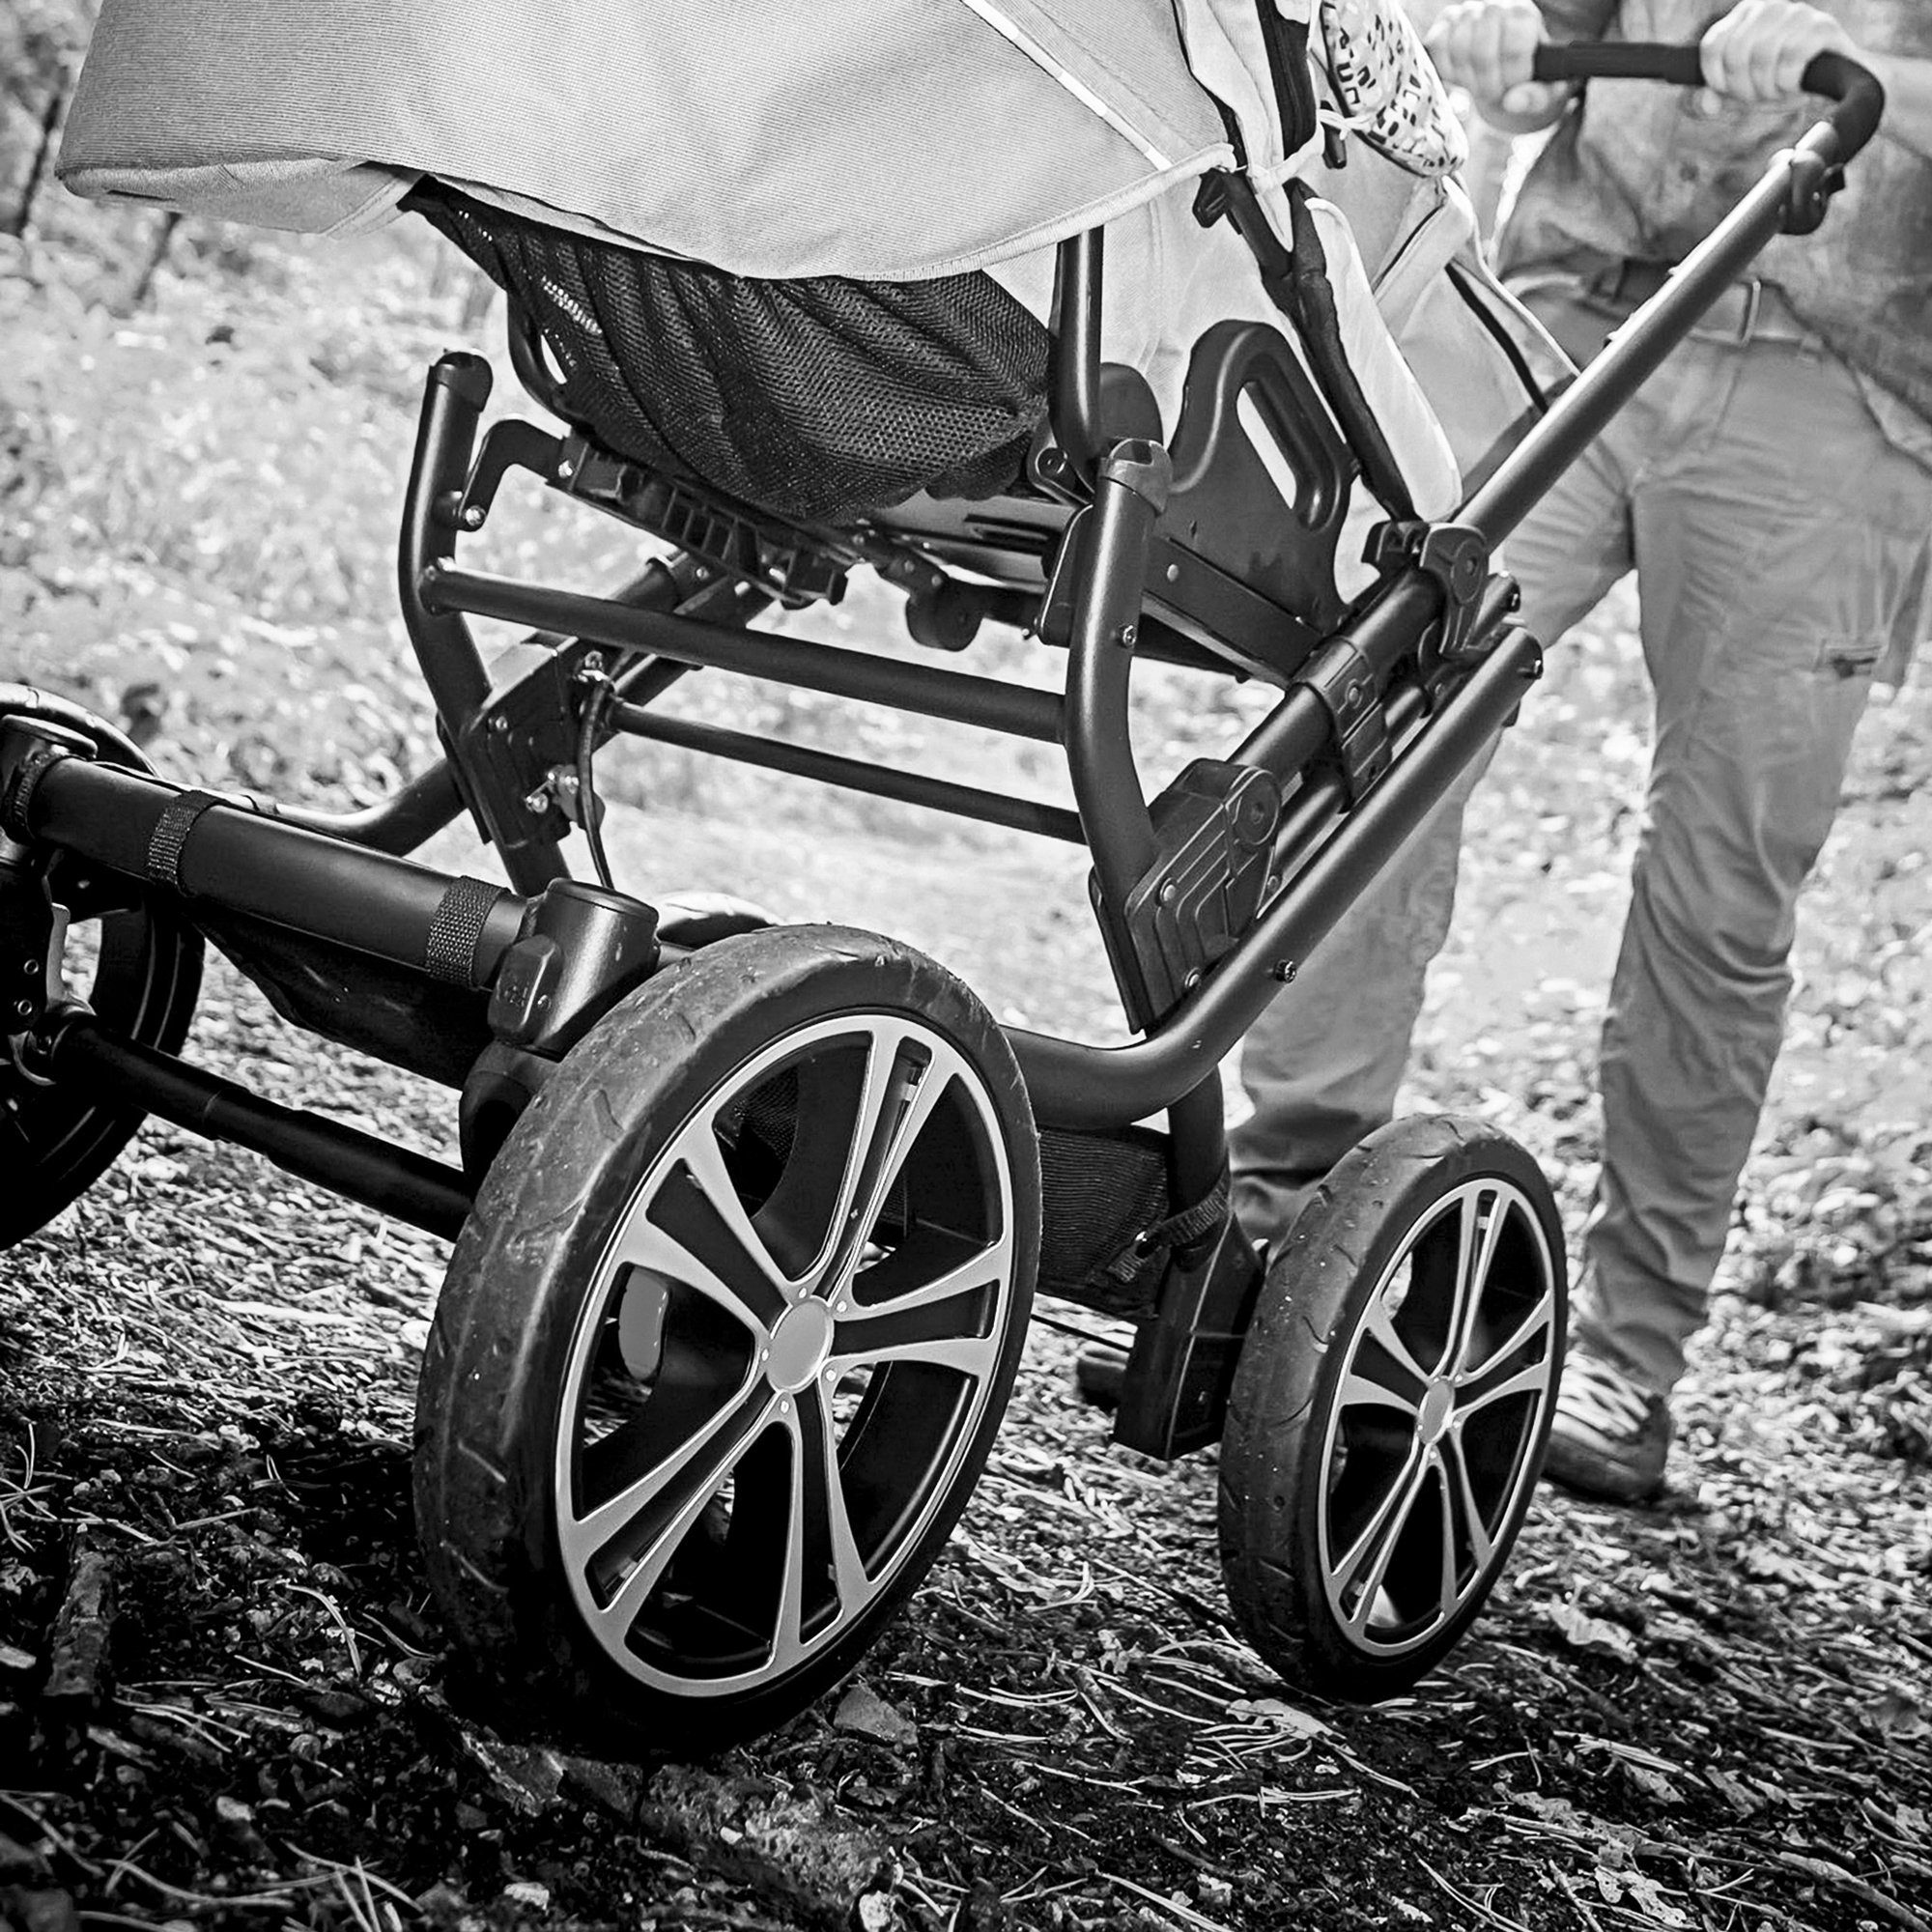 Gesslein Kombi-Kinderwagen Handarbeit mit eloxiert/tabak, & C1 meliert/Streifen, F10 Design Deutschland Tragetasche Air+, Lift; grau aus